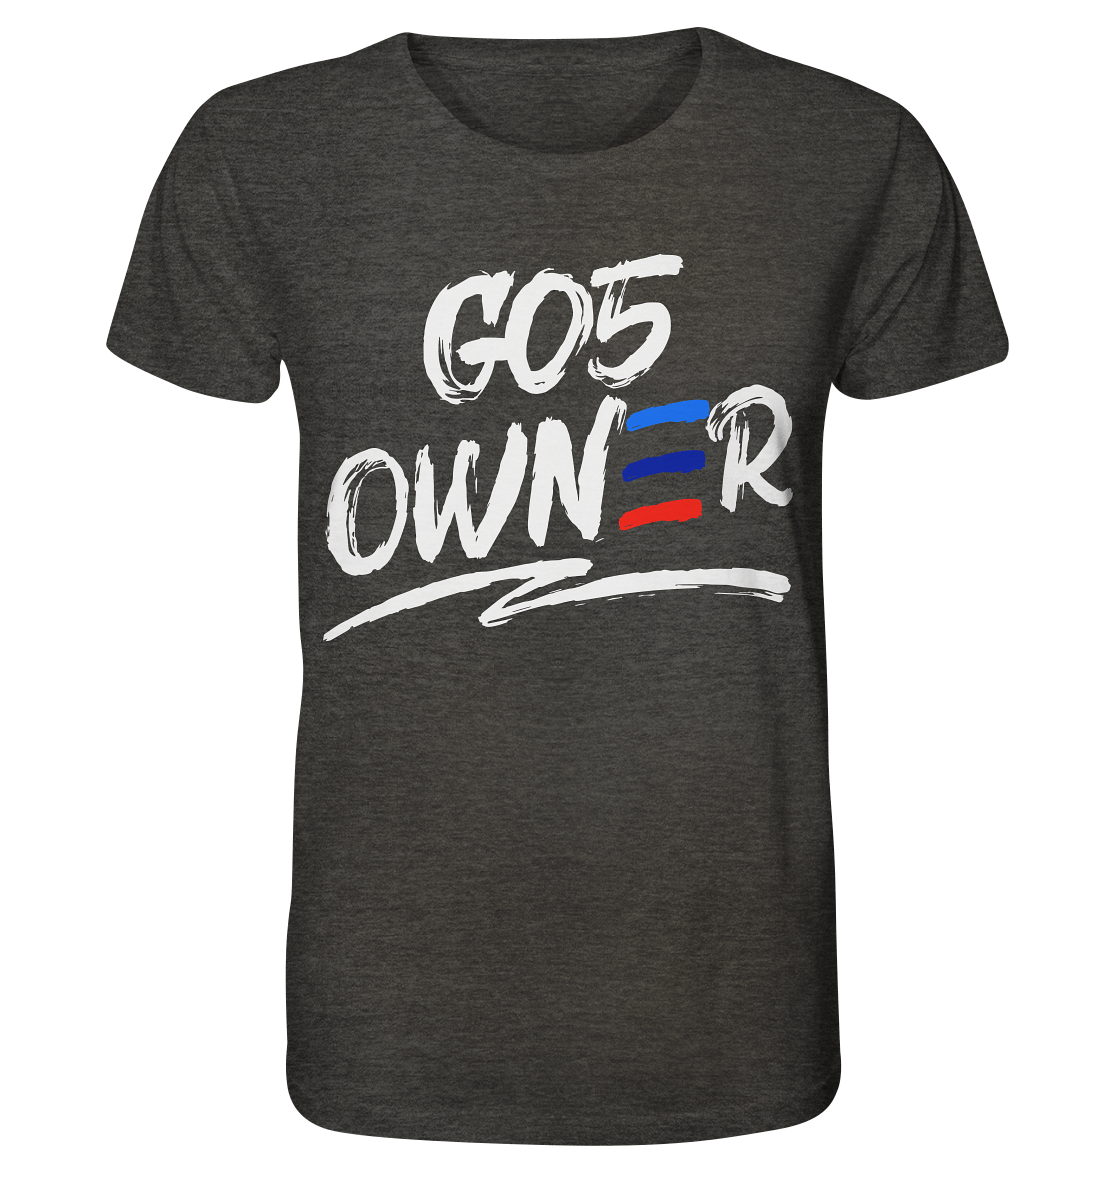 COD_BGKG05OWNER - Organic Shirt (meliert)